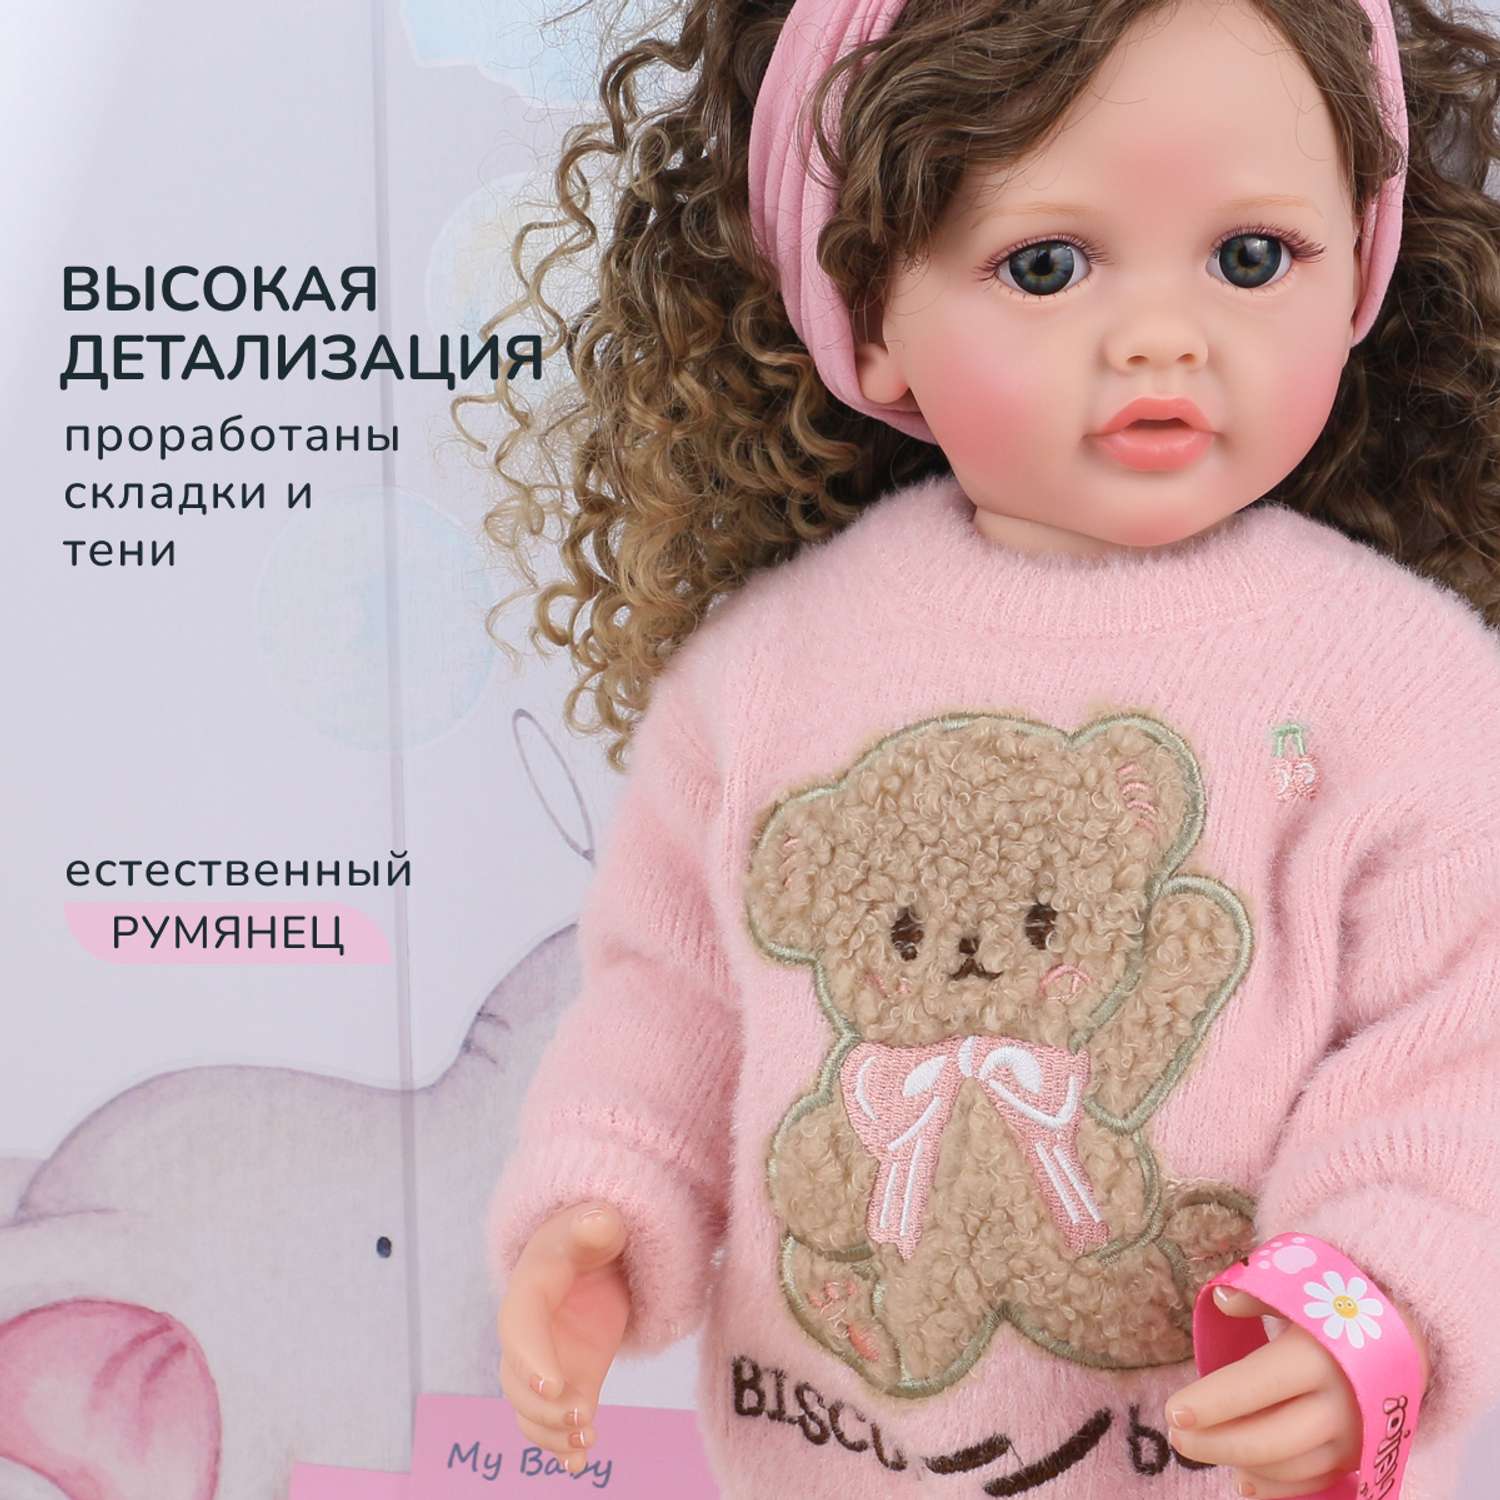 Кукла Реборн QA BABY Татьяна большая пупс набор игрушки для девочки 55 см 5554 - фото 11